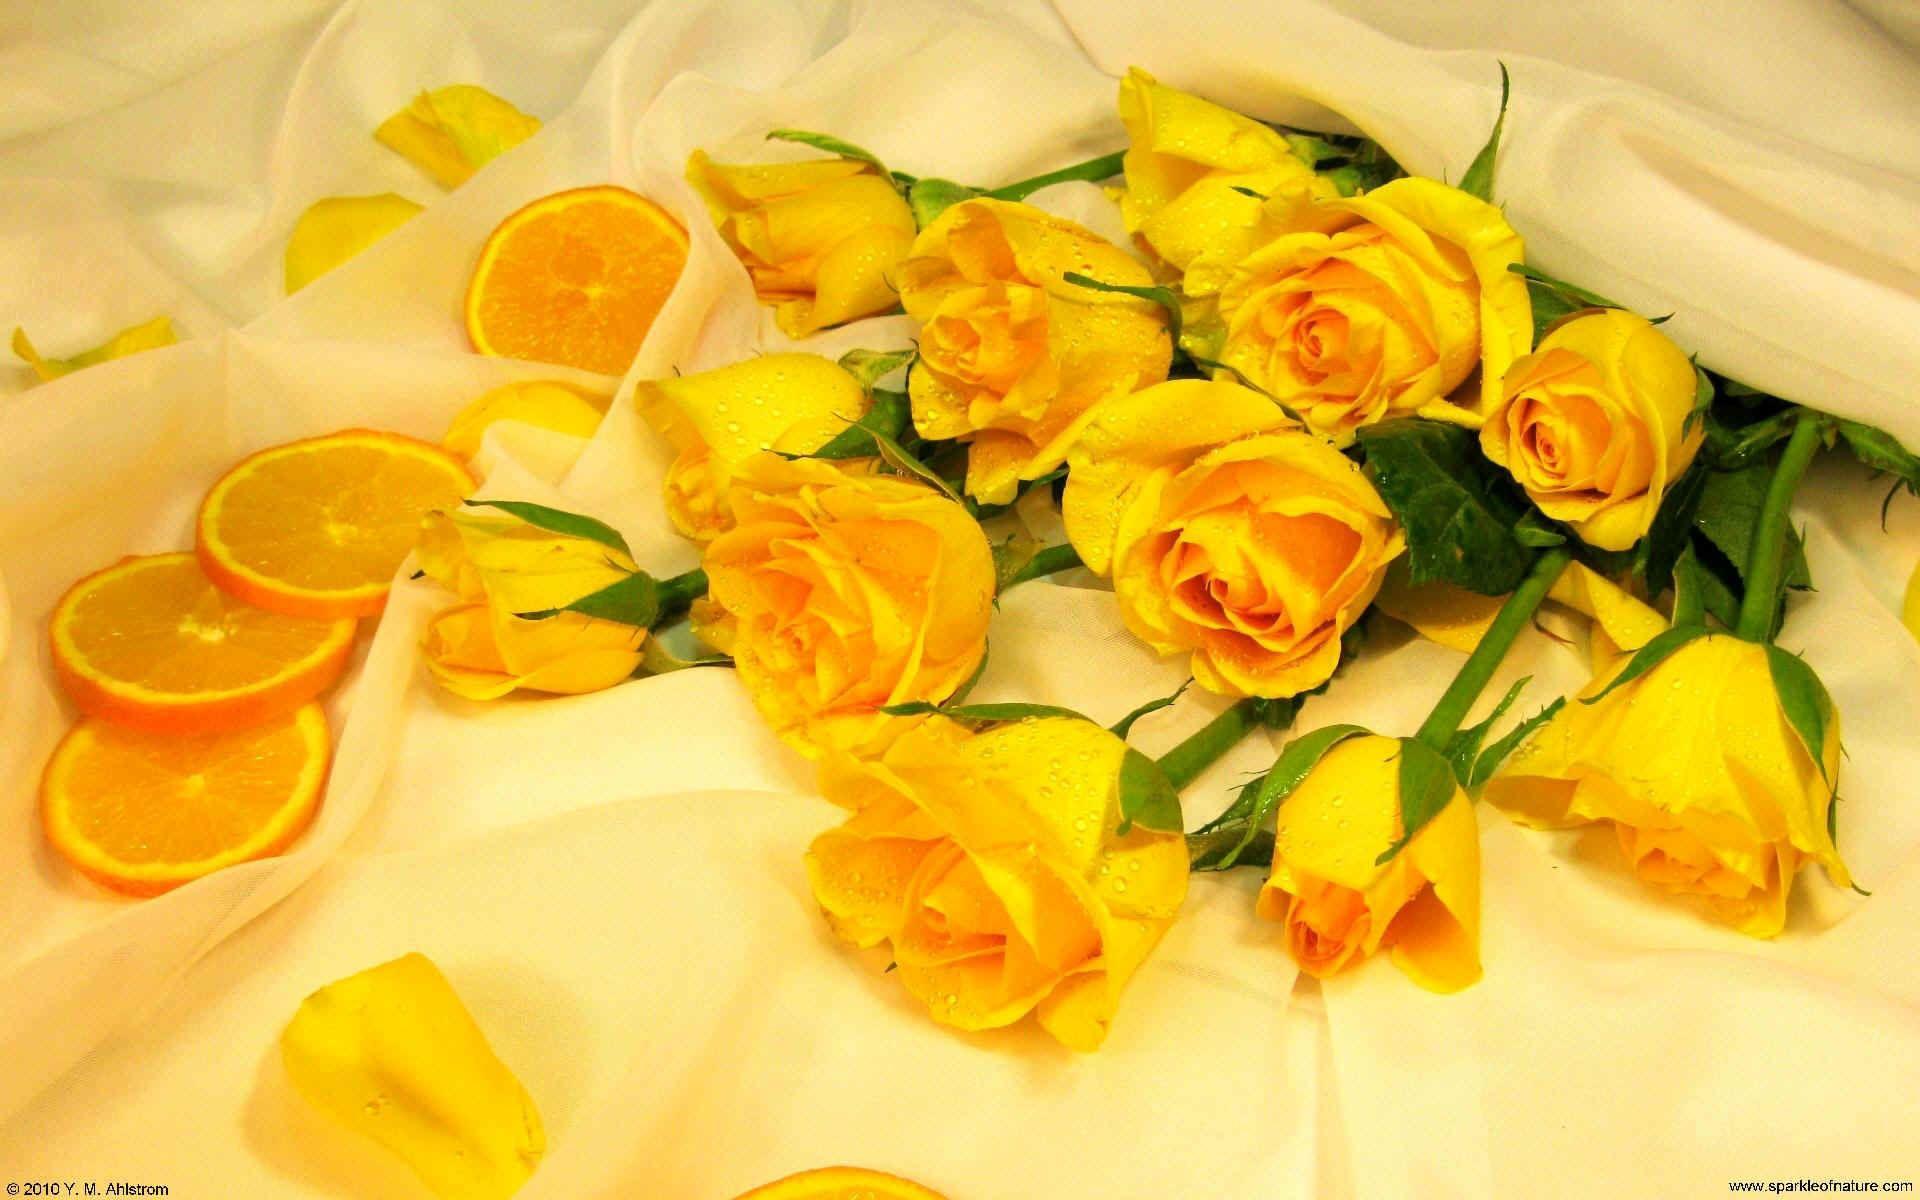 Hoa hồng vàng là biểu tượng của sự độc đáo và duyên dáng. Hãy chiêm ngưỡng hình ảnh và cảm nhận sự lãng mạn và độc đáo của hoa hồng vàng.